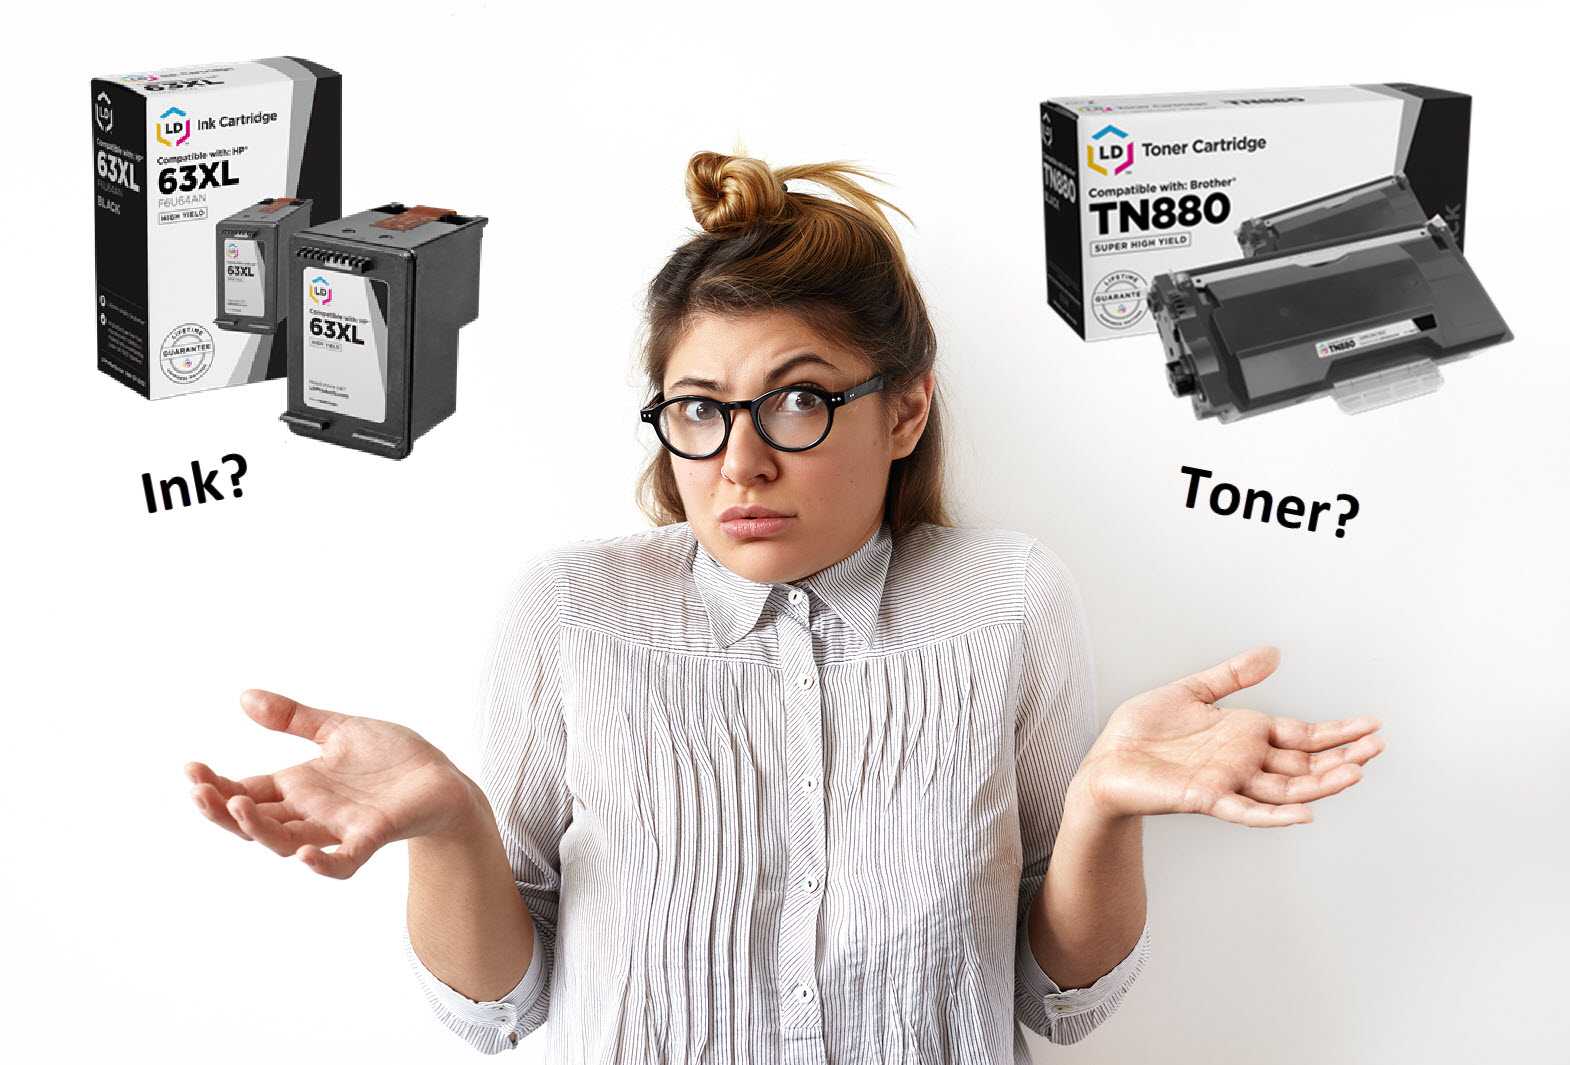 Whatâs the difference between ink and toner cartridges?